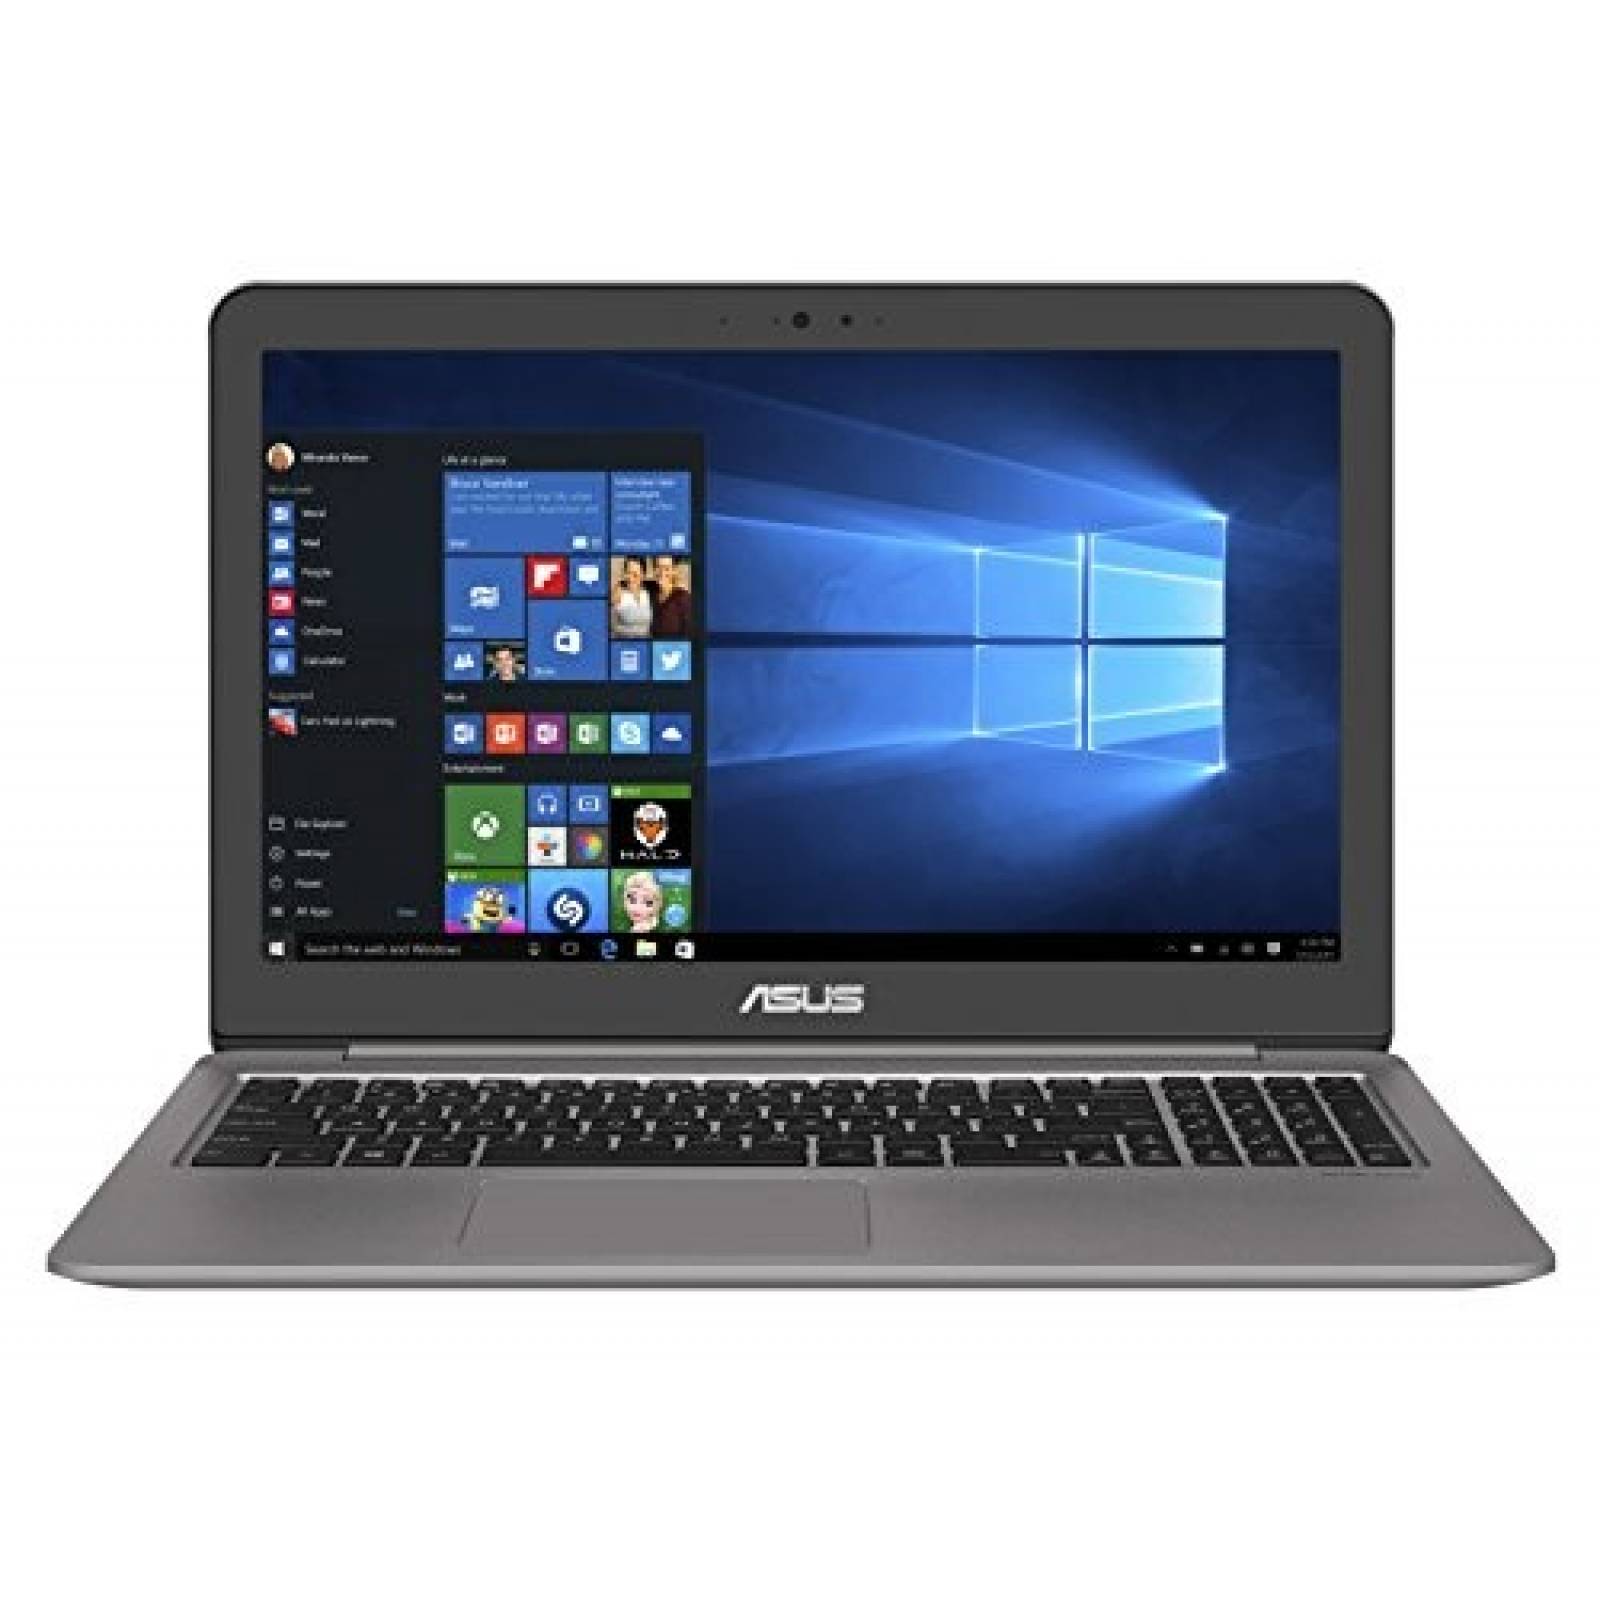 Laptop Asus Zenbook 15 UX510UX i7 8GB 1TB 256GB GTX 950M